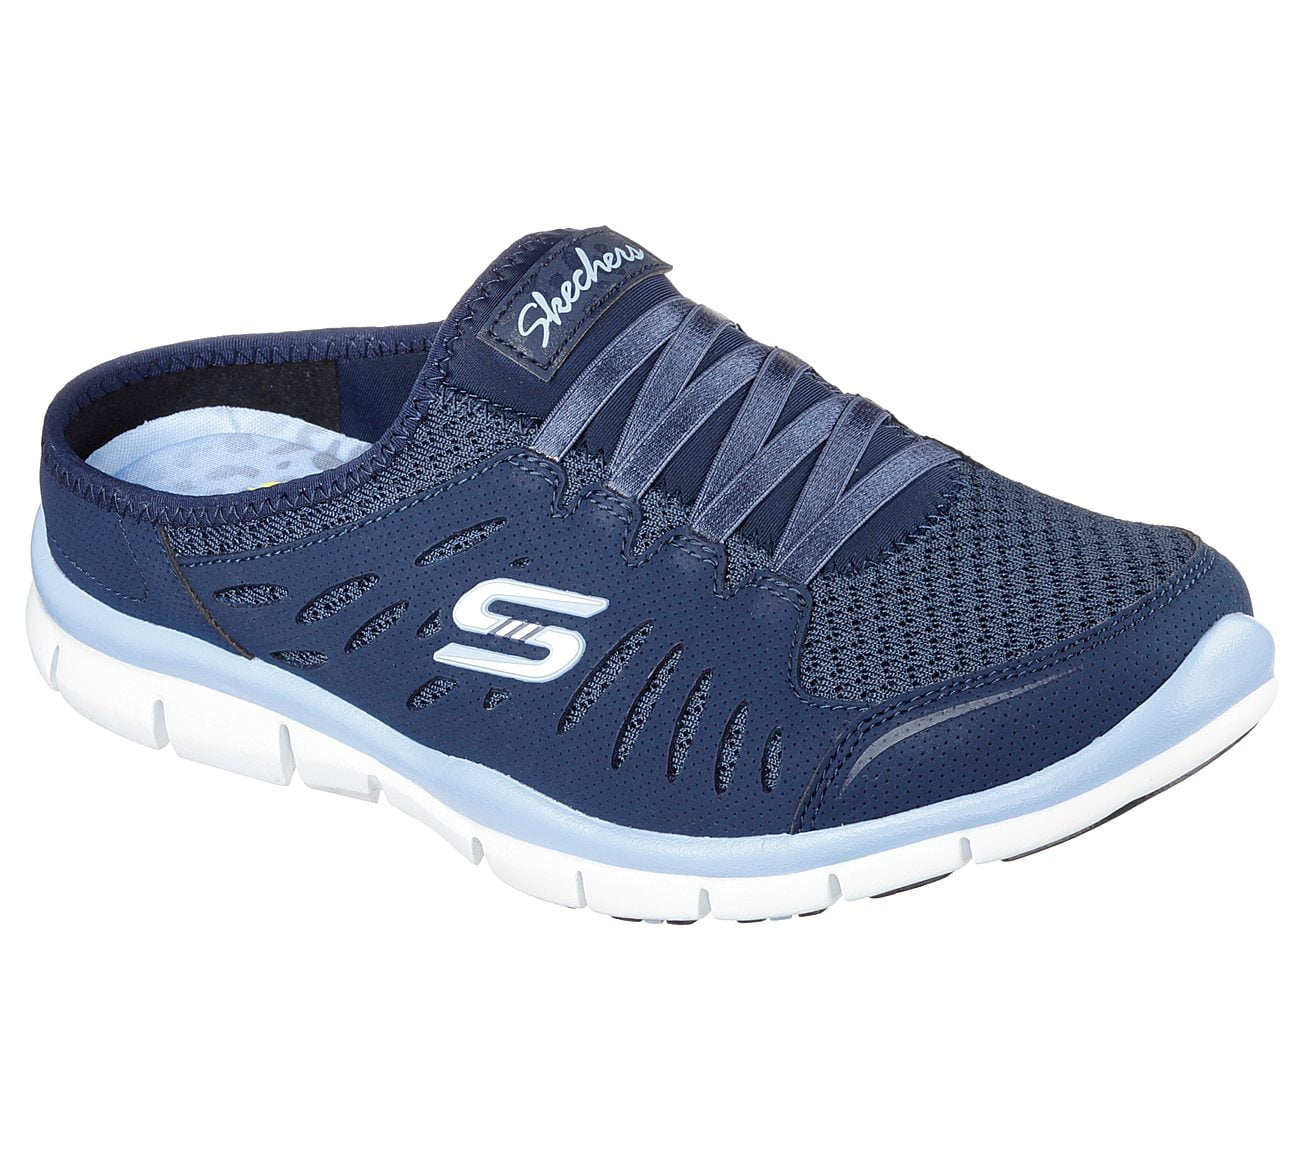 Sport Women's Gratis No Limits Sneaker,Navy/Light Blue,7.5 - Walmart.com